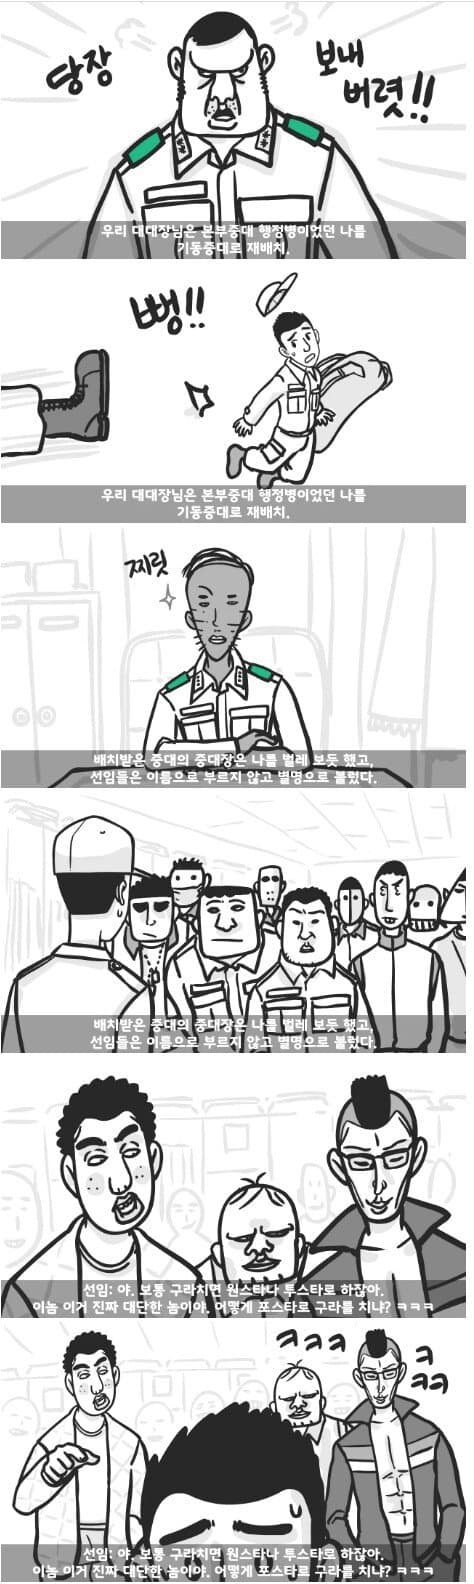 군대 4스타인 만화 7.jpg